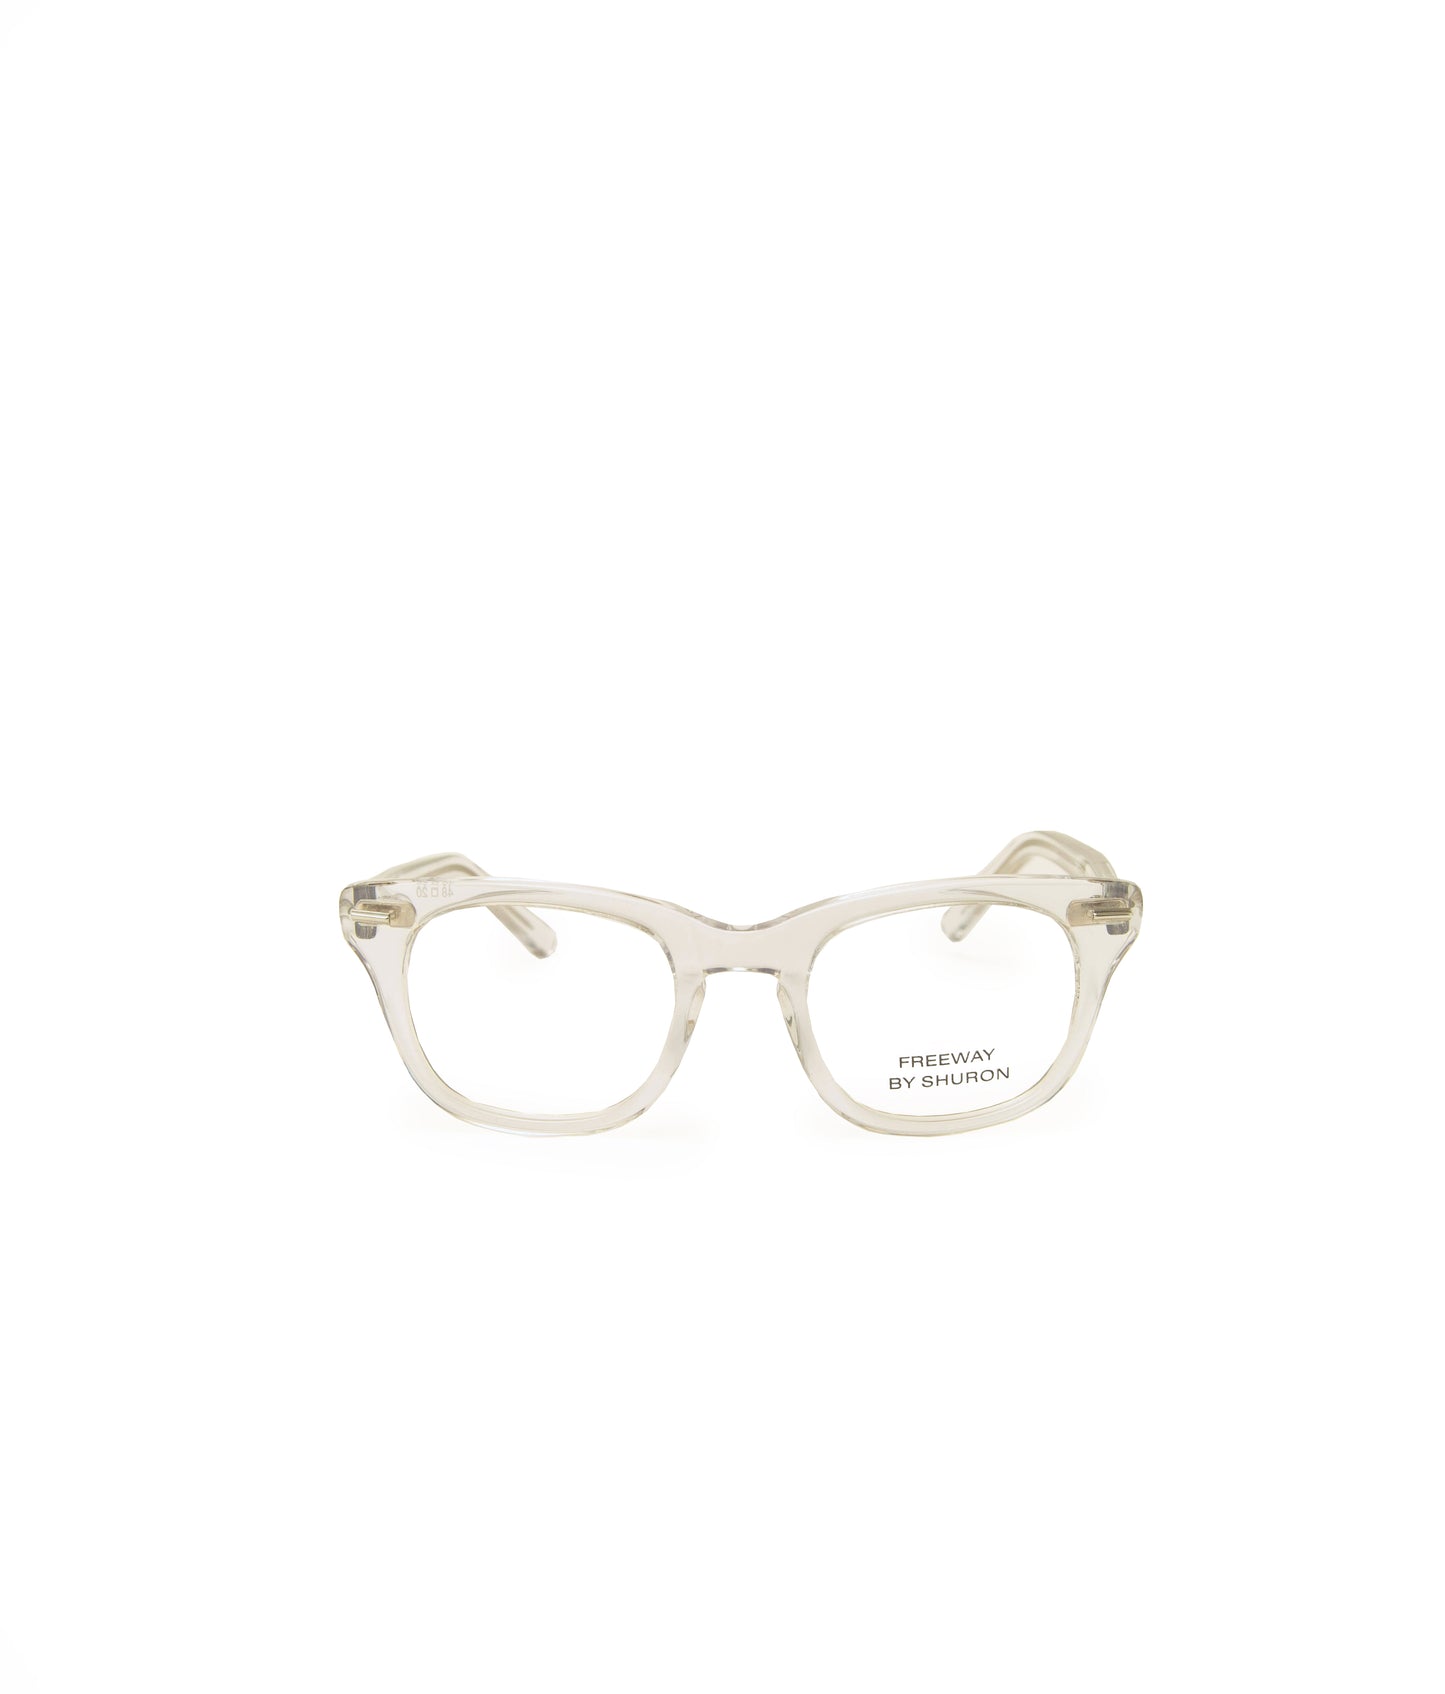 アメリカ製の透明なメガネ